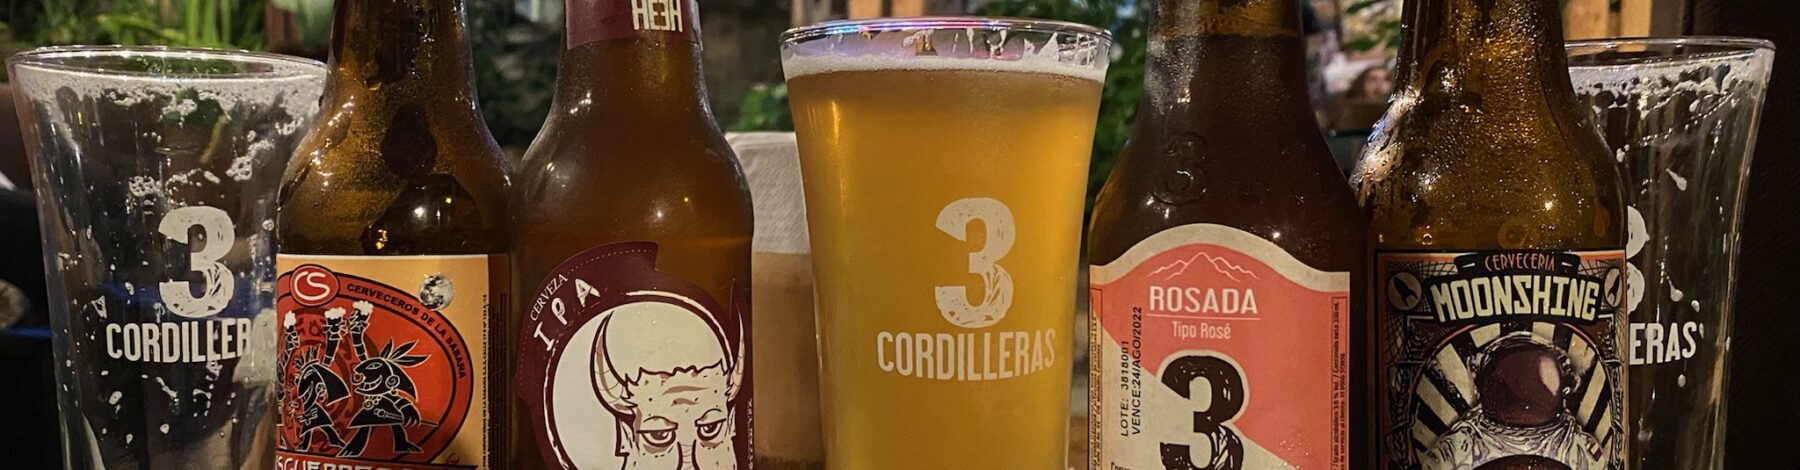 3 Cordilleras – Taste the Best Beer Experience in Colombia!